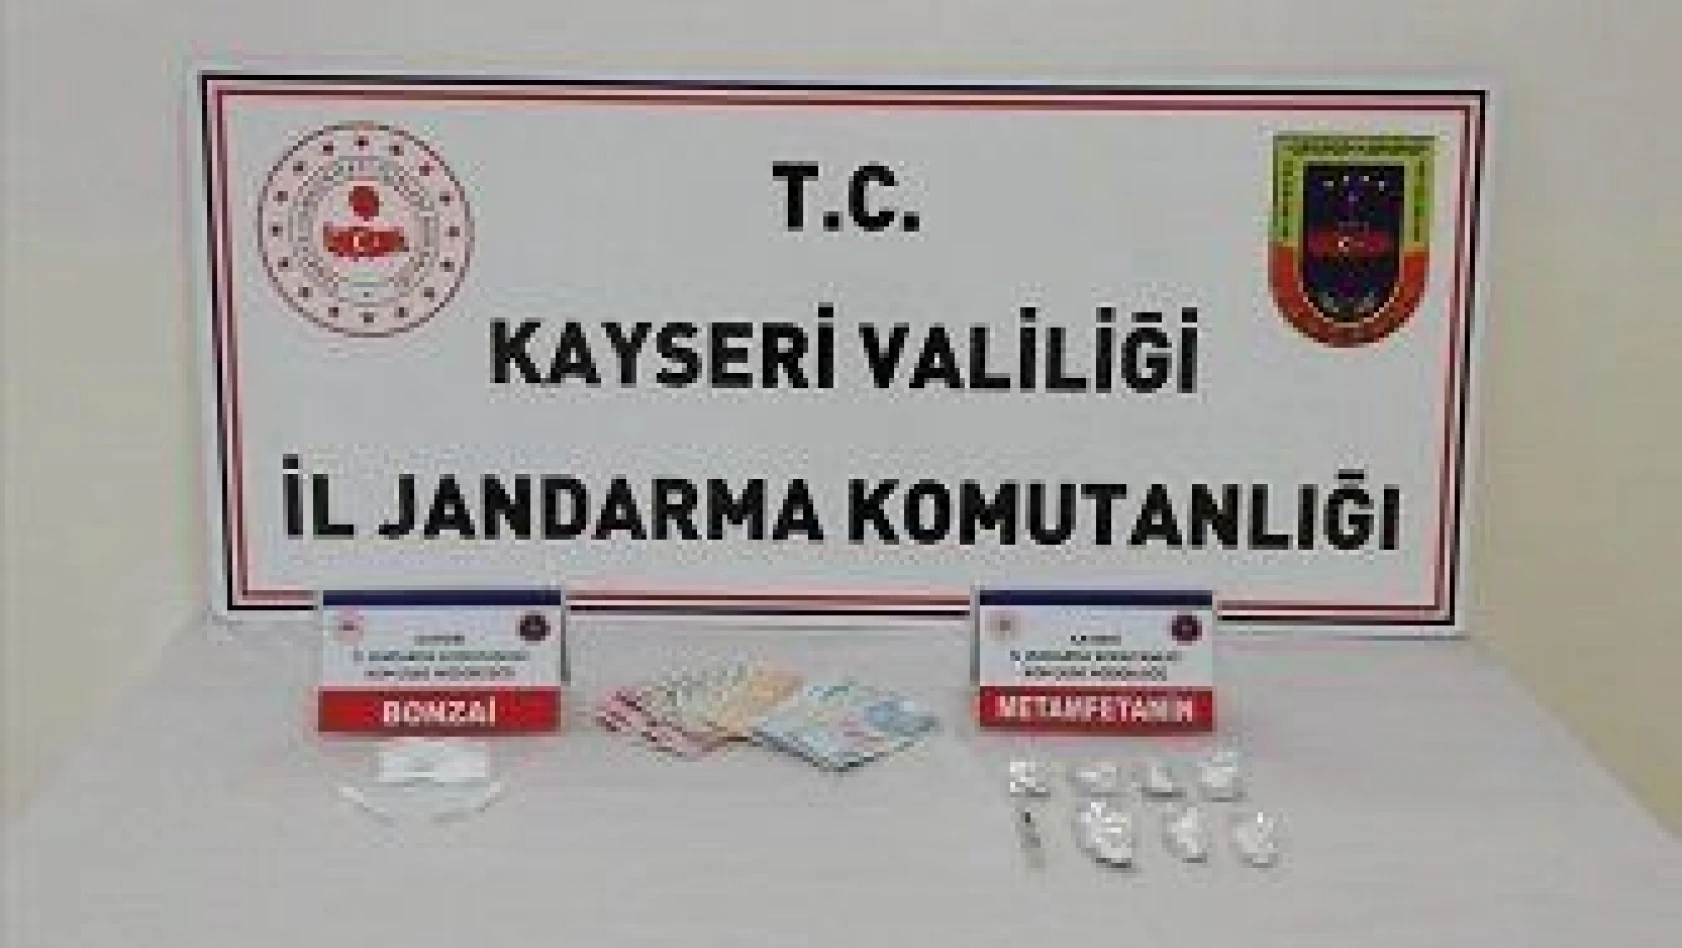 Kayseri'de 3 kişiye uyuşturucu gözaltısı